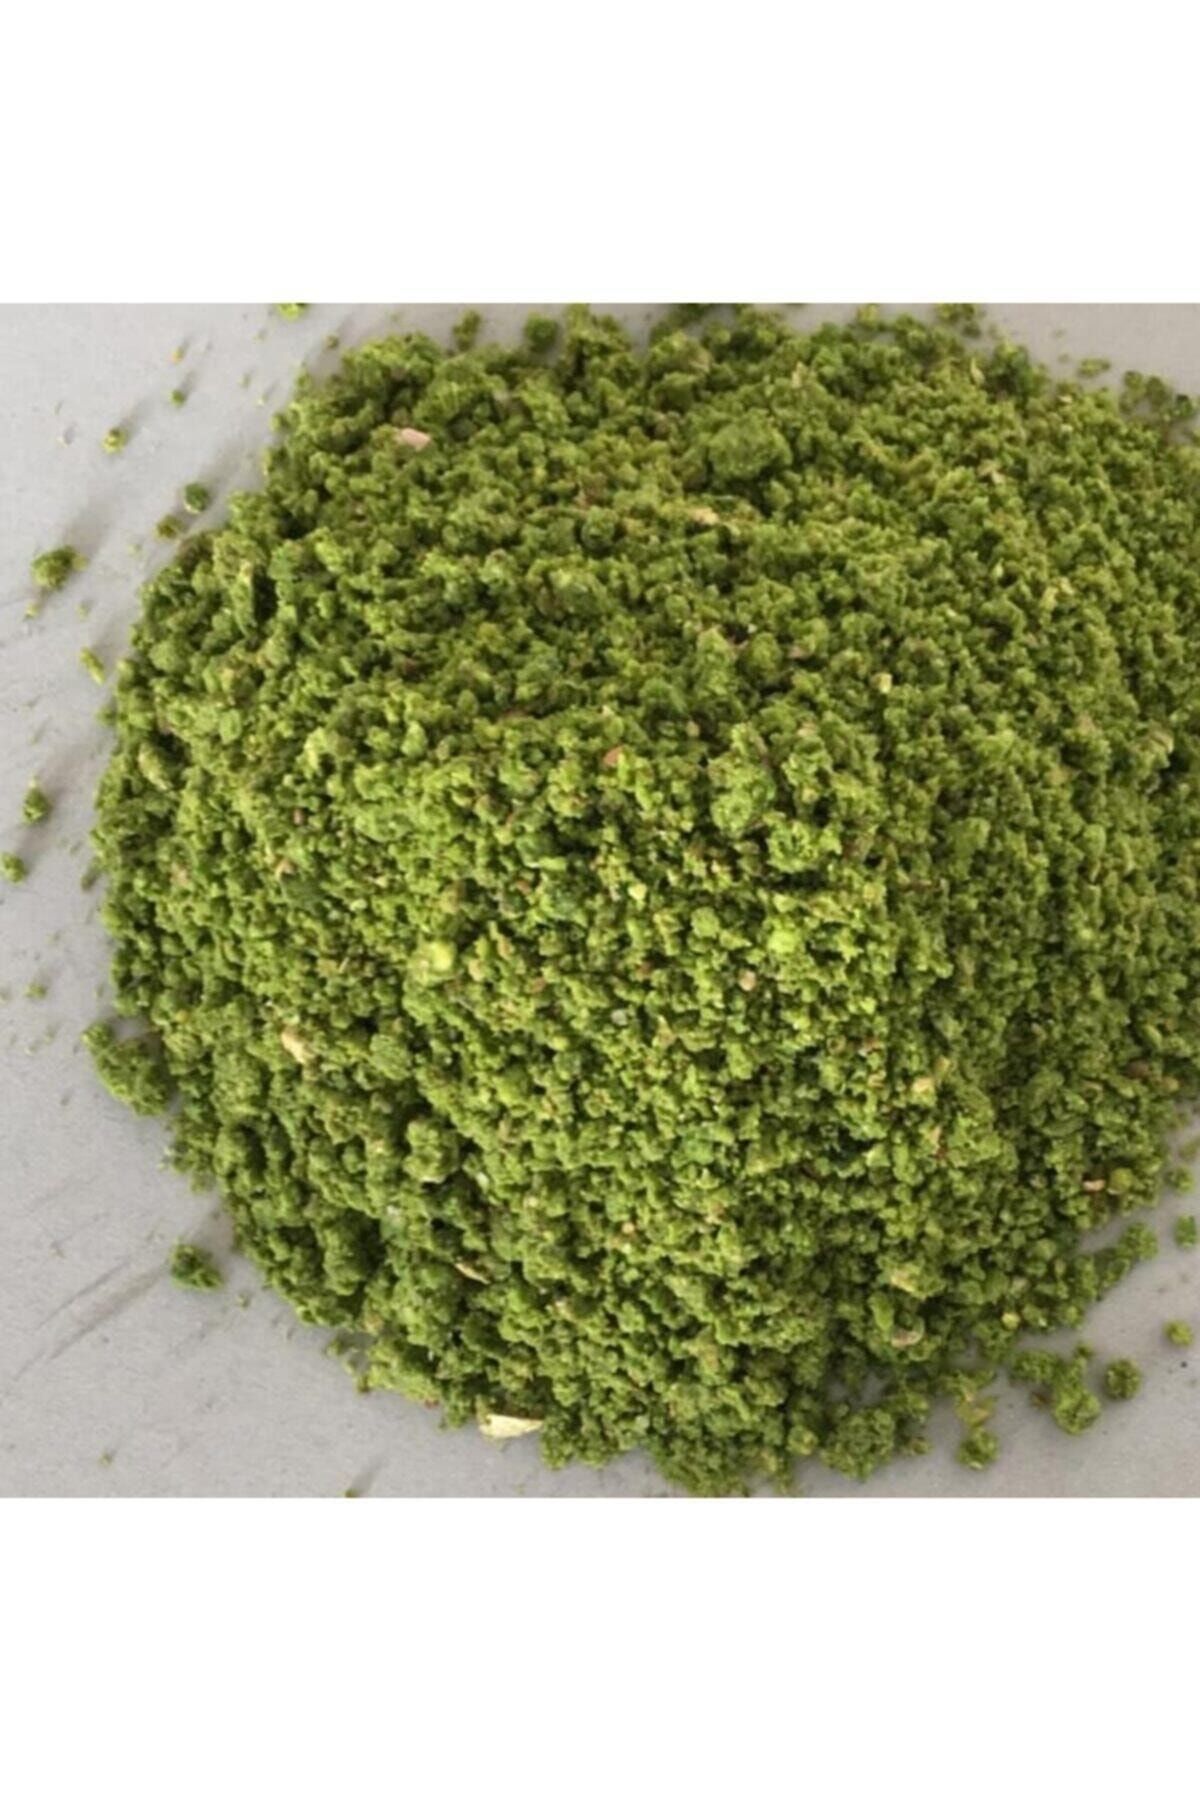 Arifoğlu Fıstık Dünyası Yeşil Toz Antep Fıstığı Çekilmiş 0.5 kg